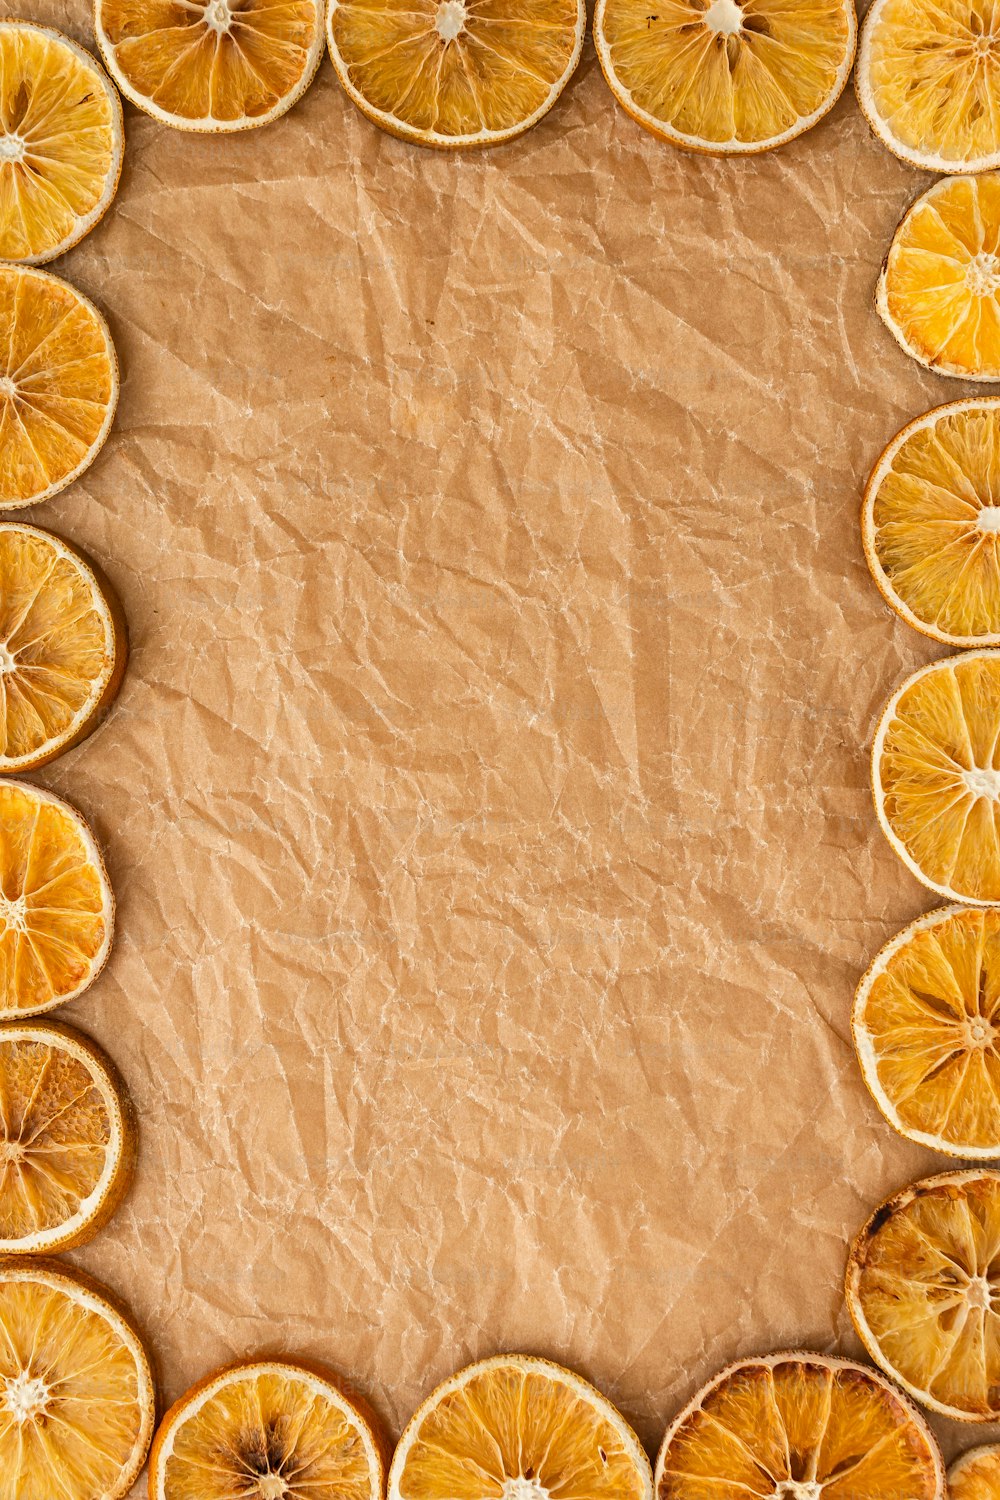 un gruppo di arance affettate disposte in un rettangolo